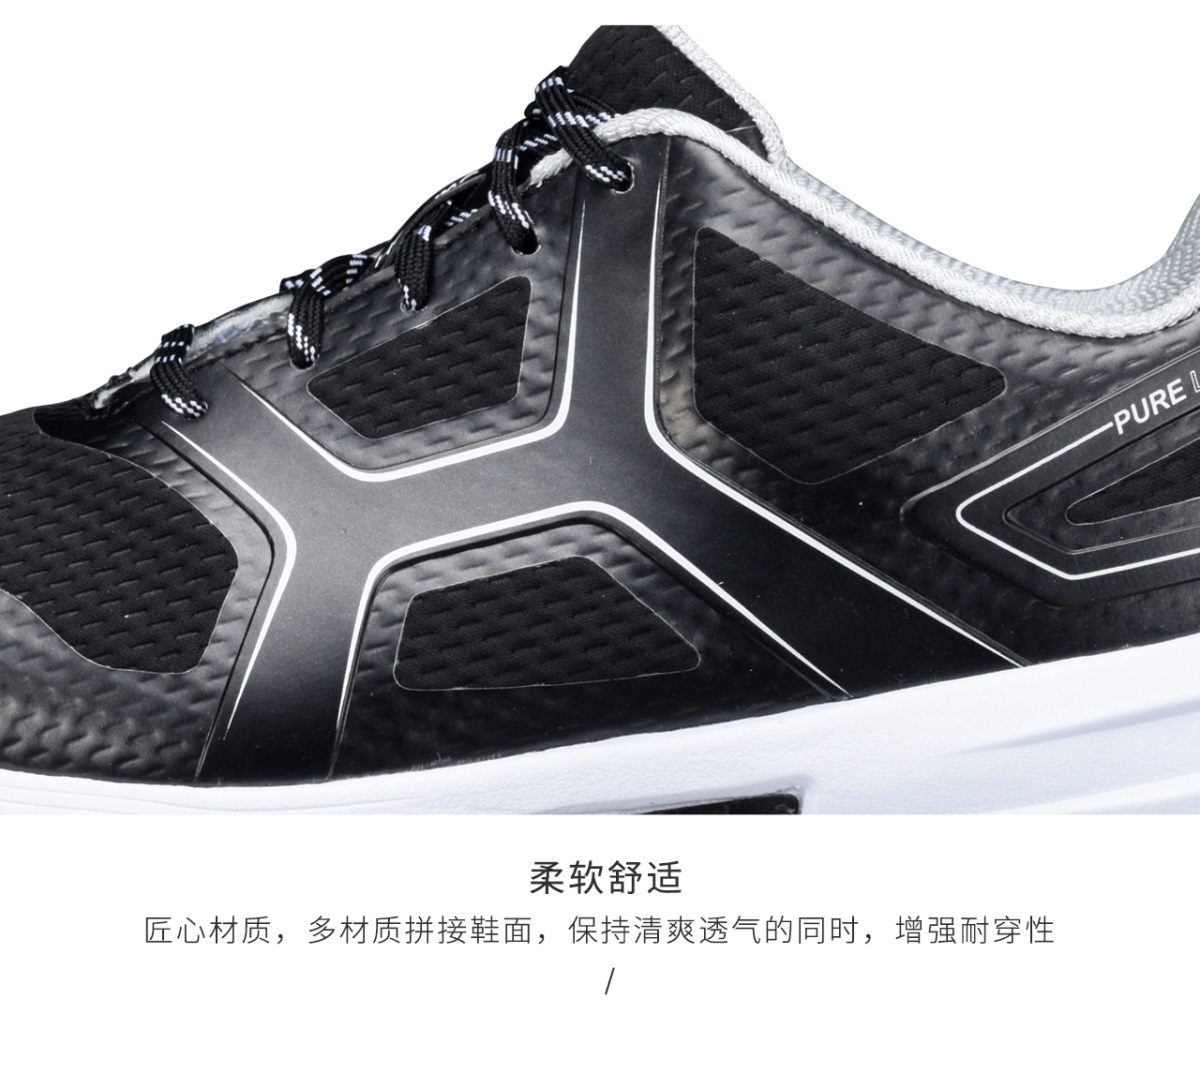 HONMA新款高尔夫男子球鞋柔软舒适透气防滑鞋钉抓地底纹